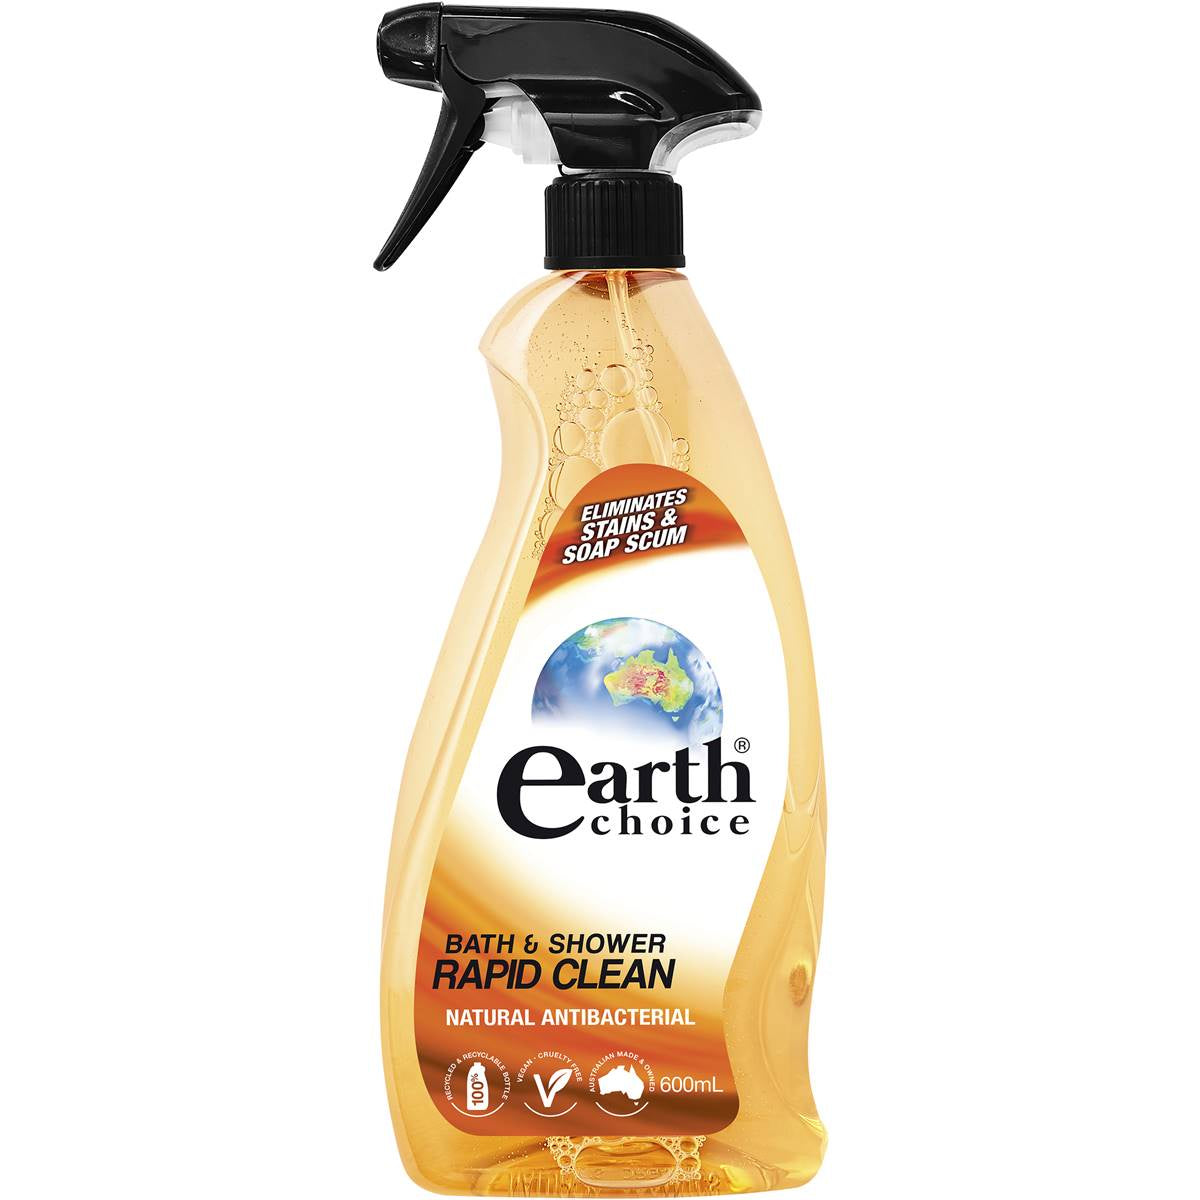 Earth Choice Bath & Shower Cleaner 600ml